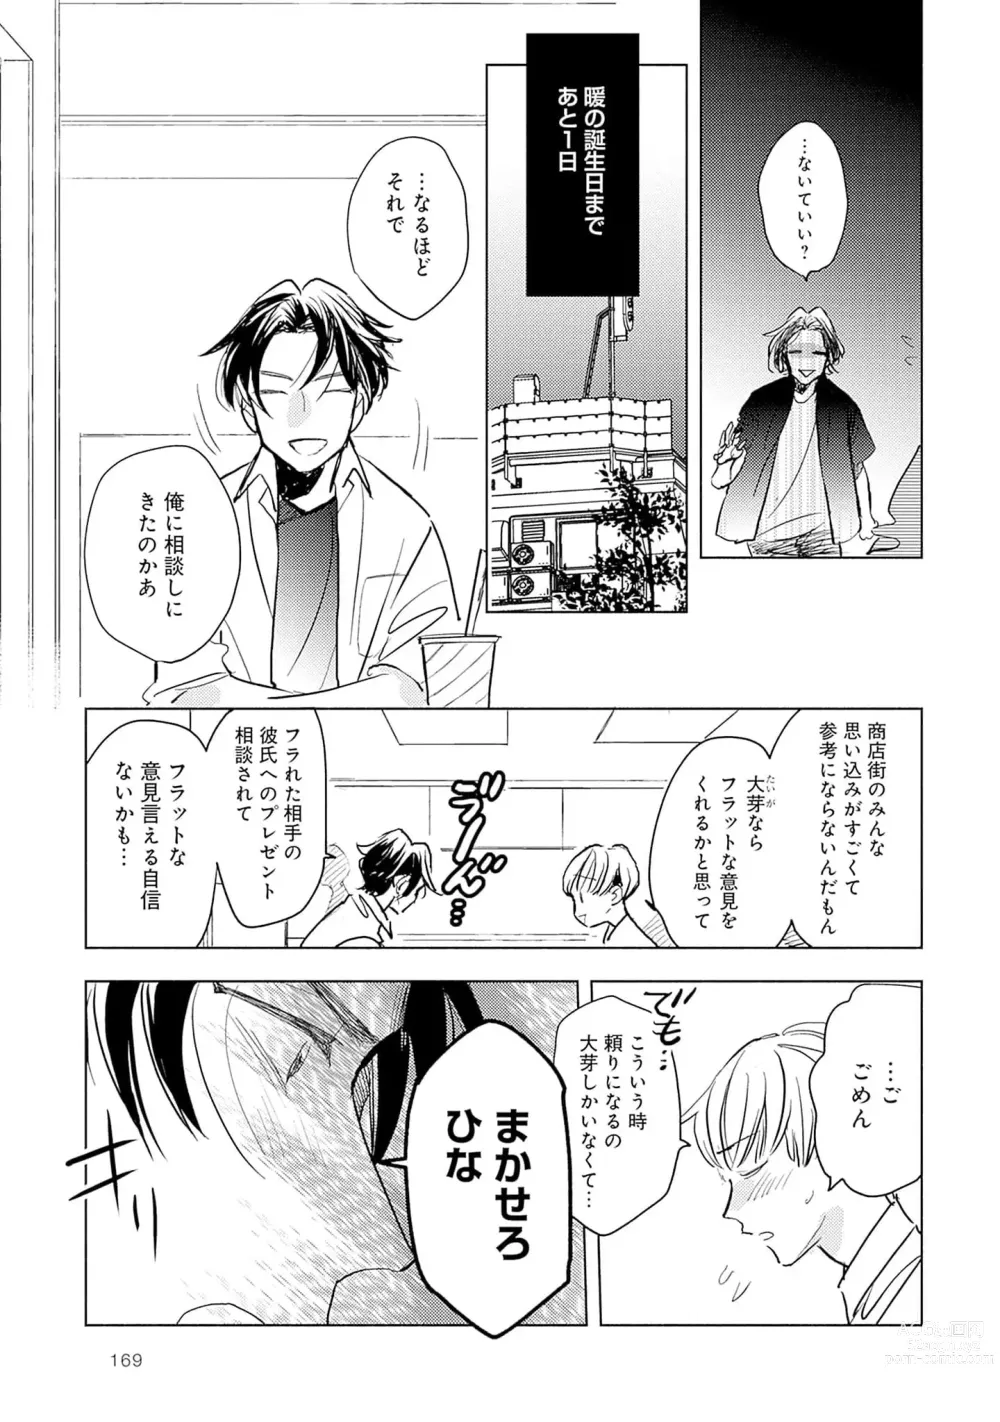 Page 171 of manga Strawberry na Days 2